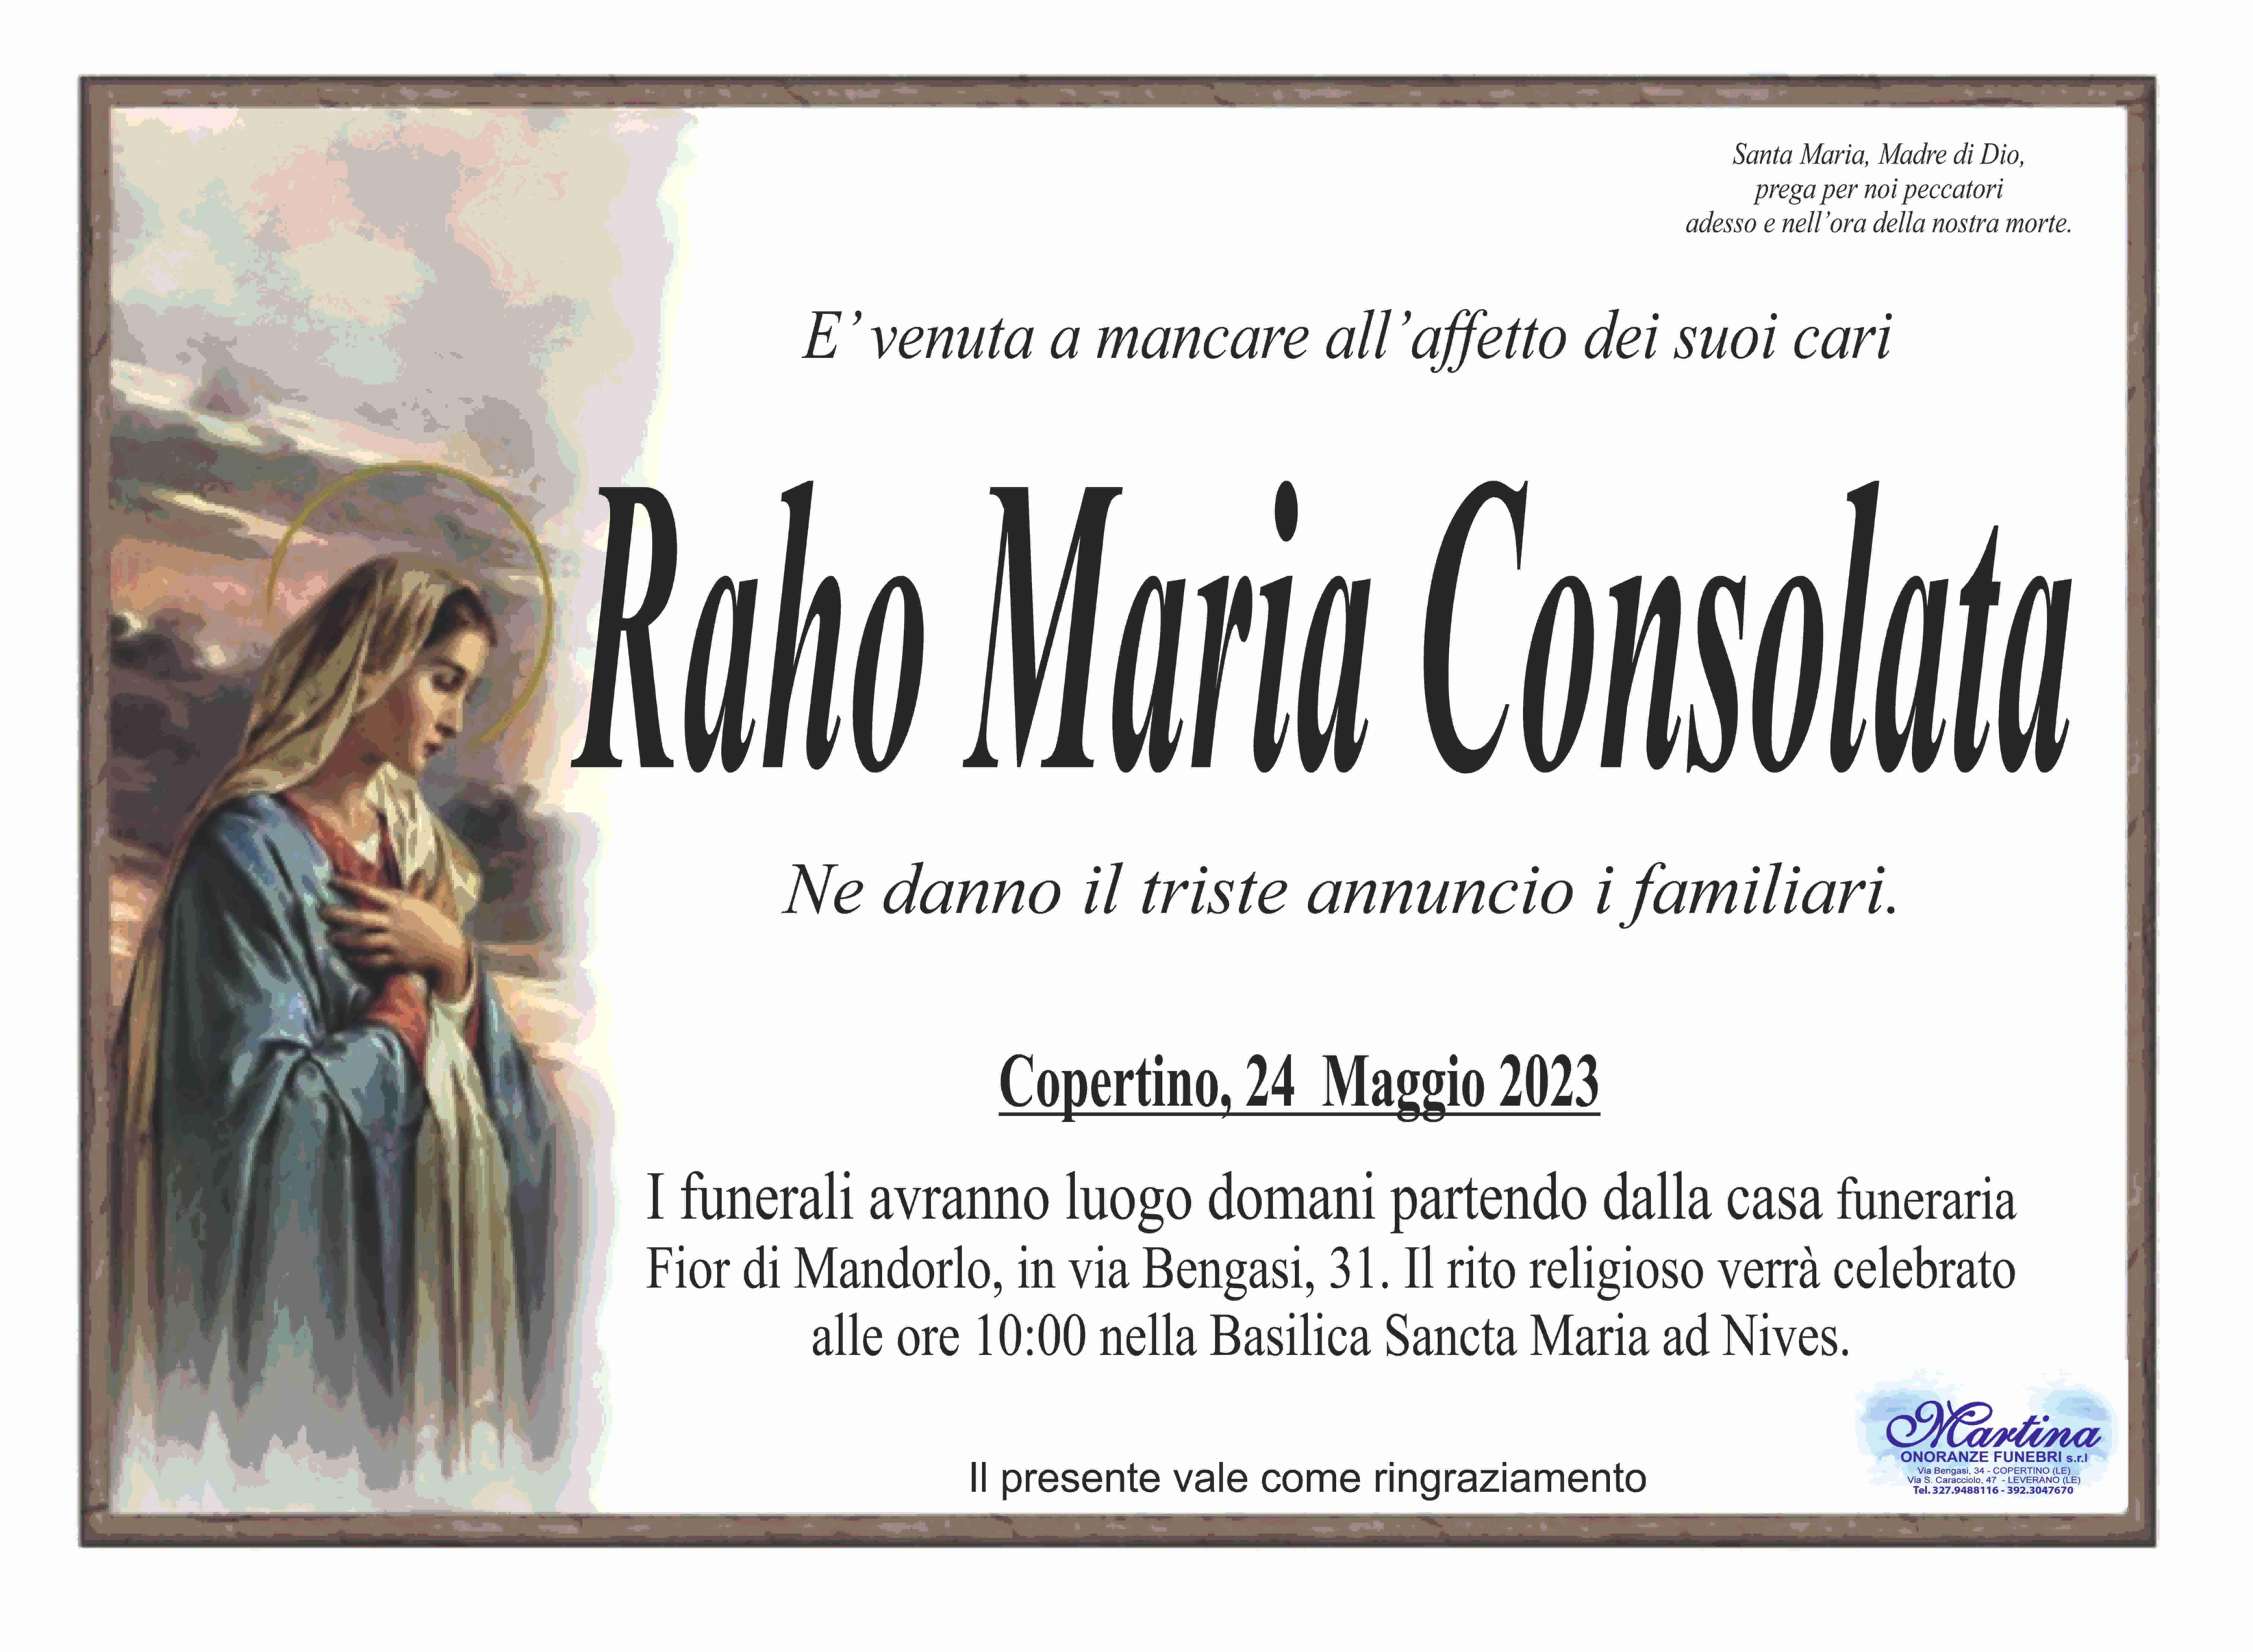 Maria Consolata Raho